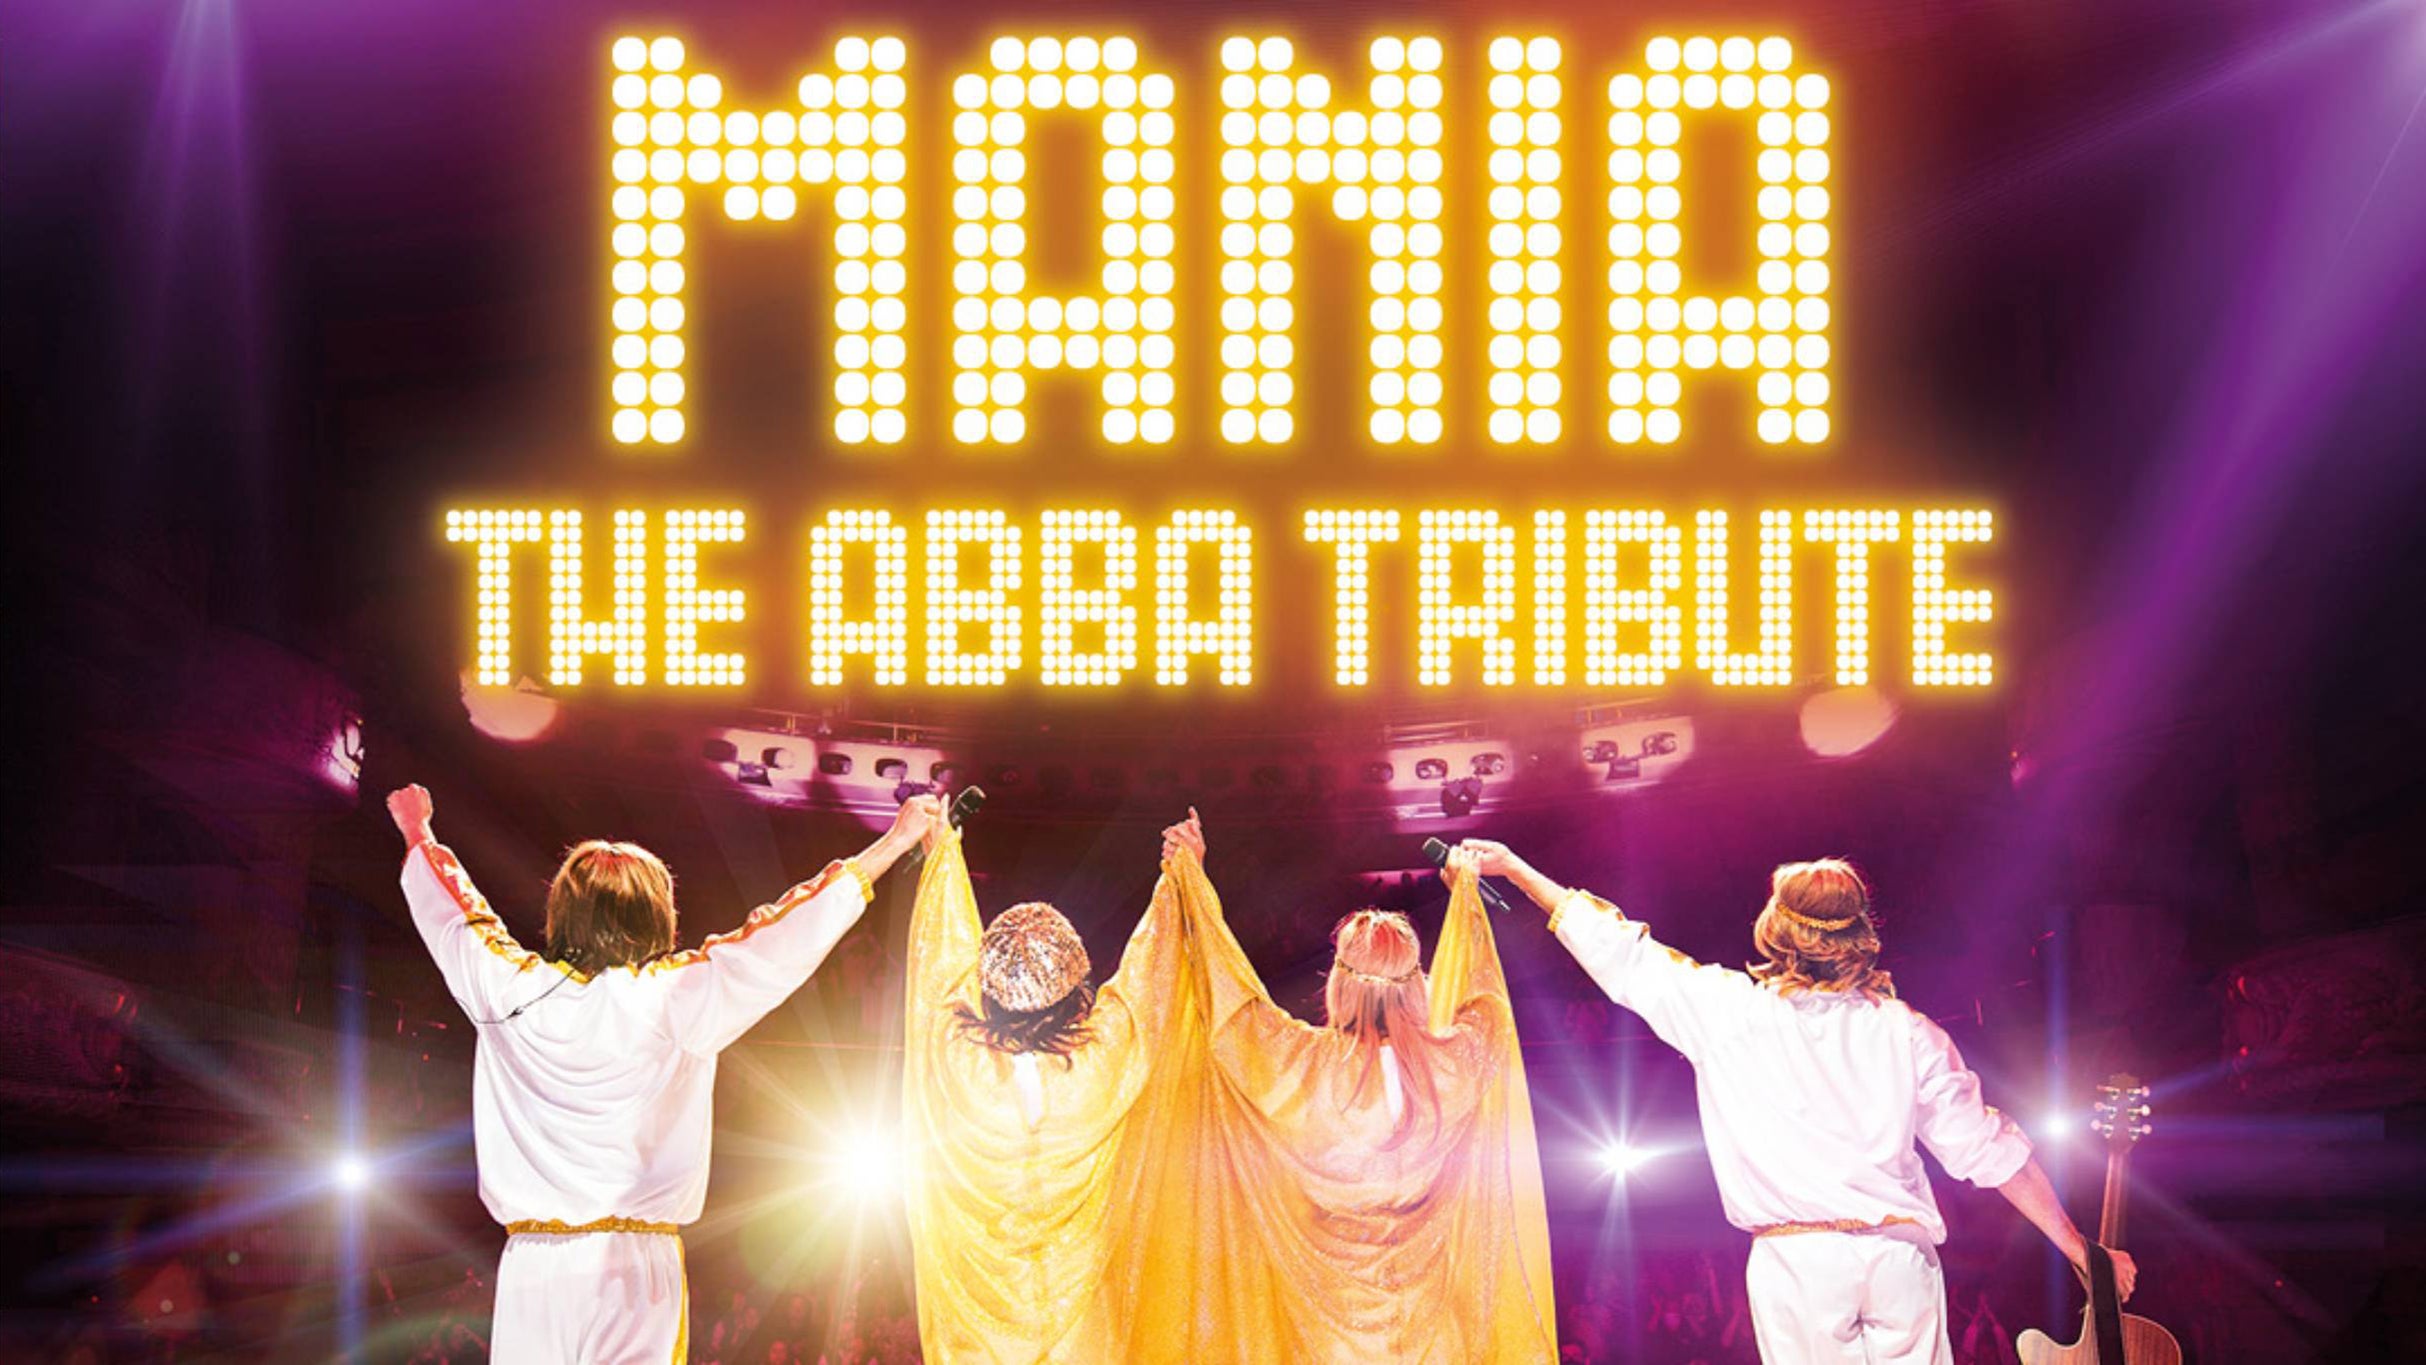 MANIA: The ABBA Tribute presale password